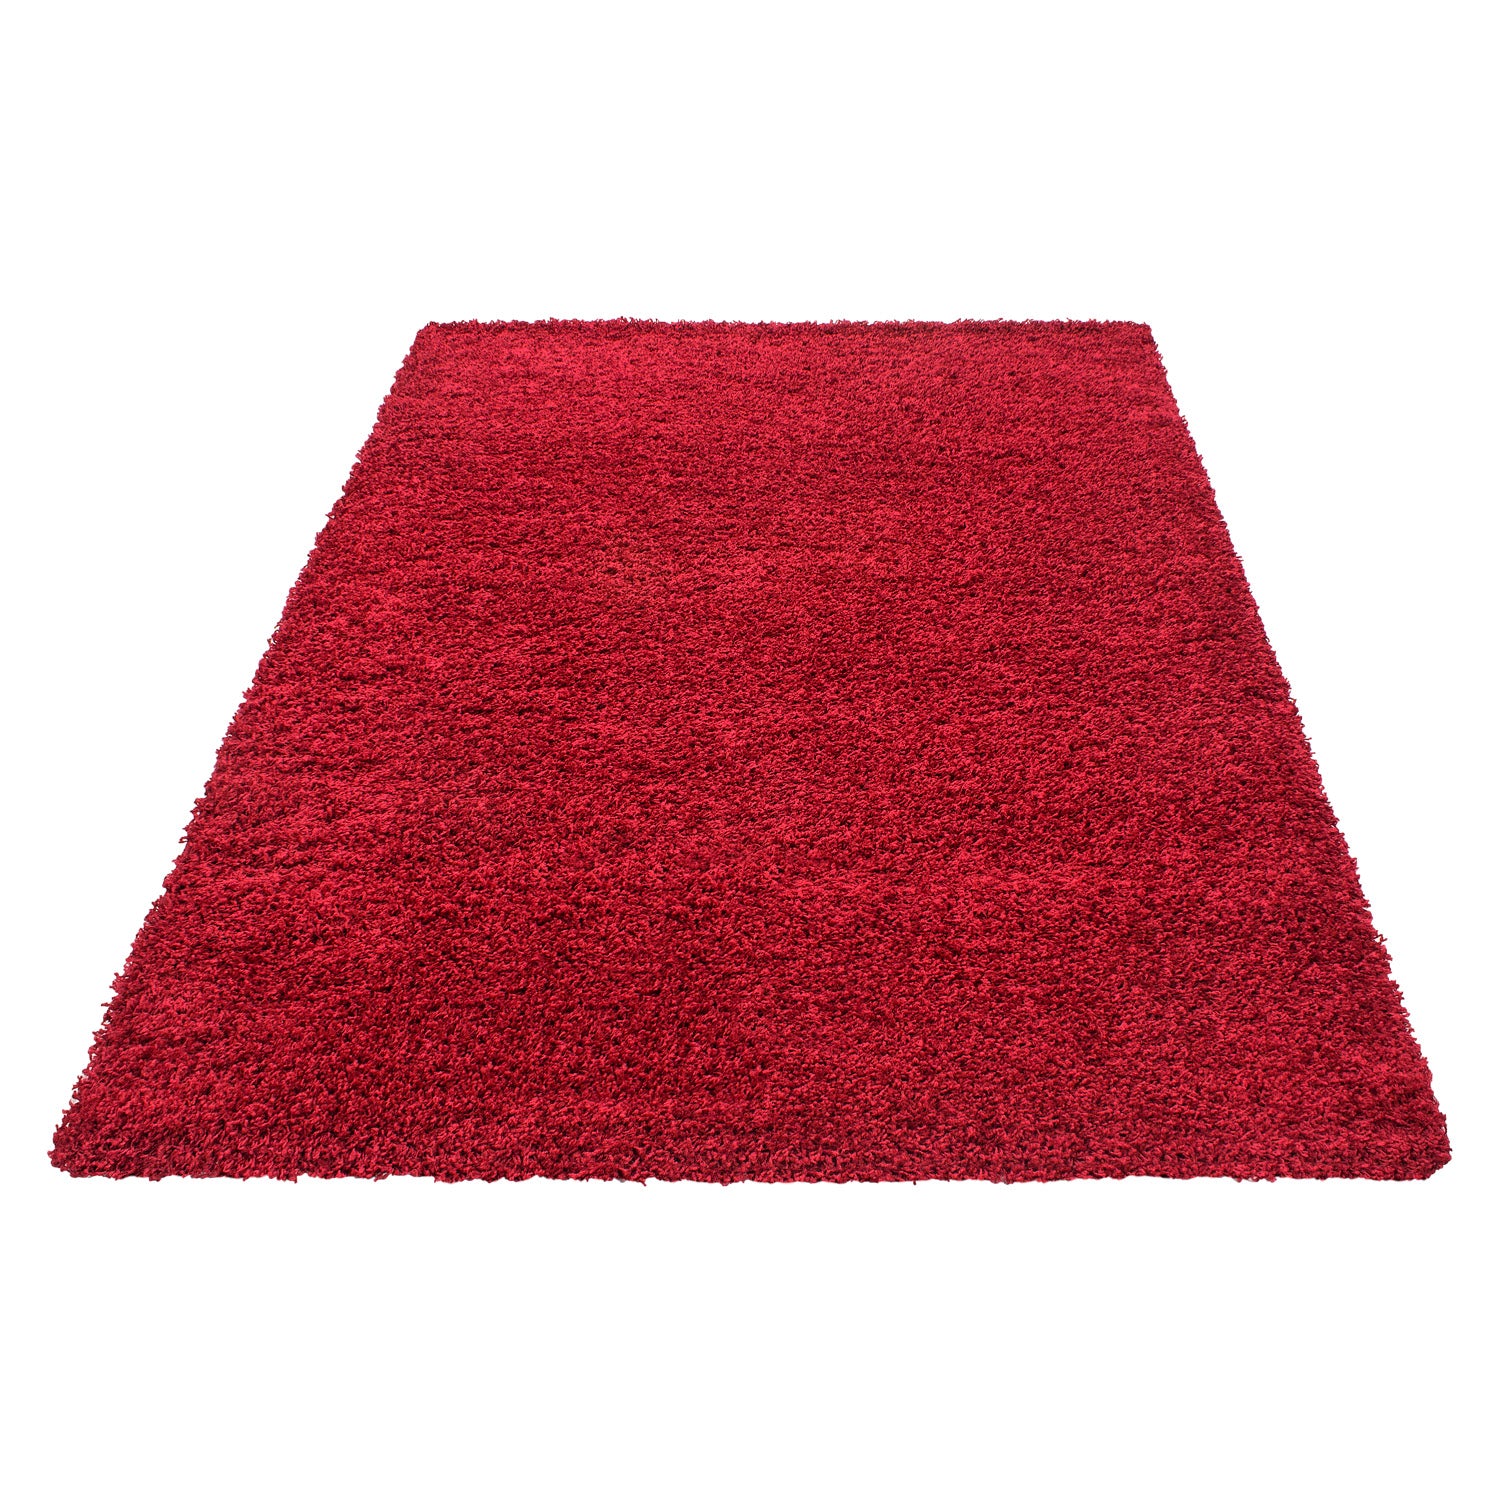 Shaggy Hochflor Langflor Teppich Soft Wohnzimmerteppich Farbe Rot Einfarbig